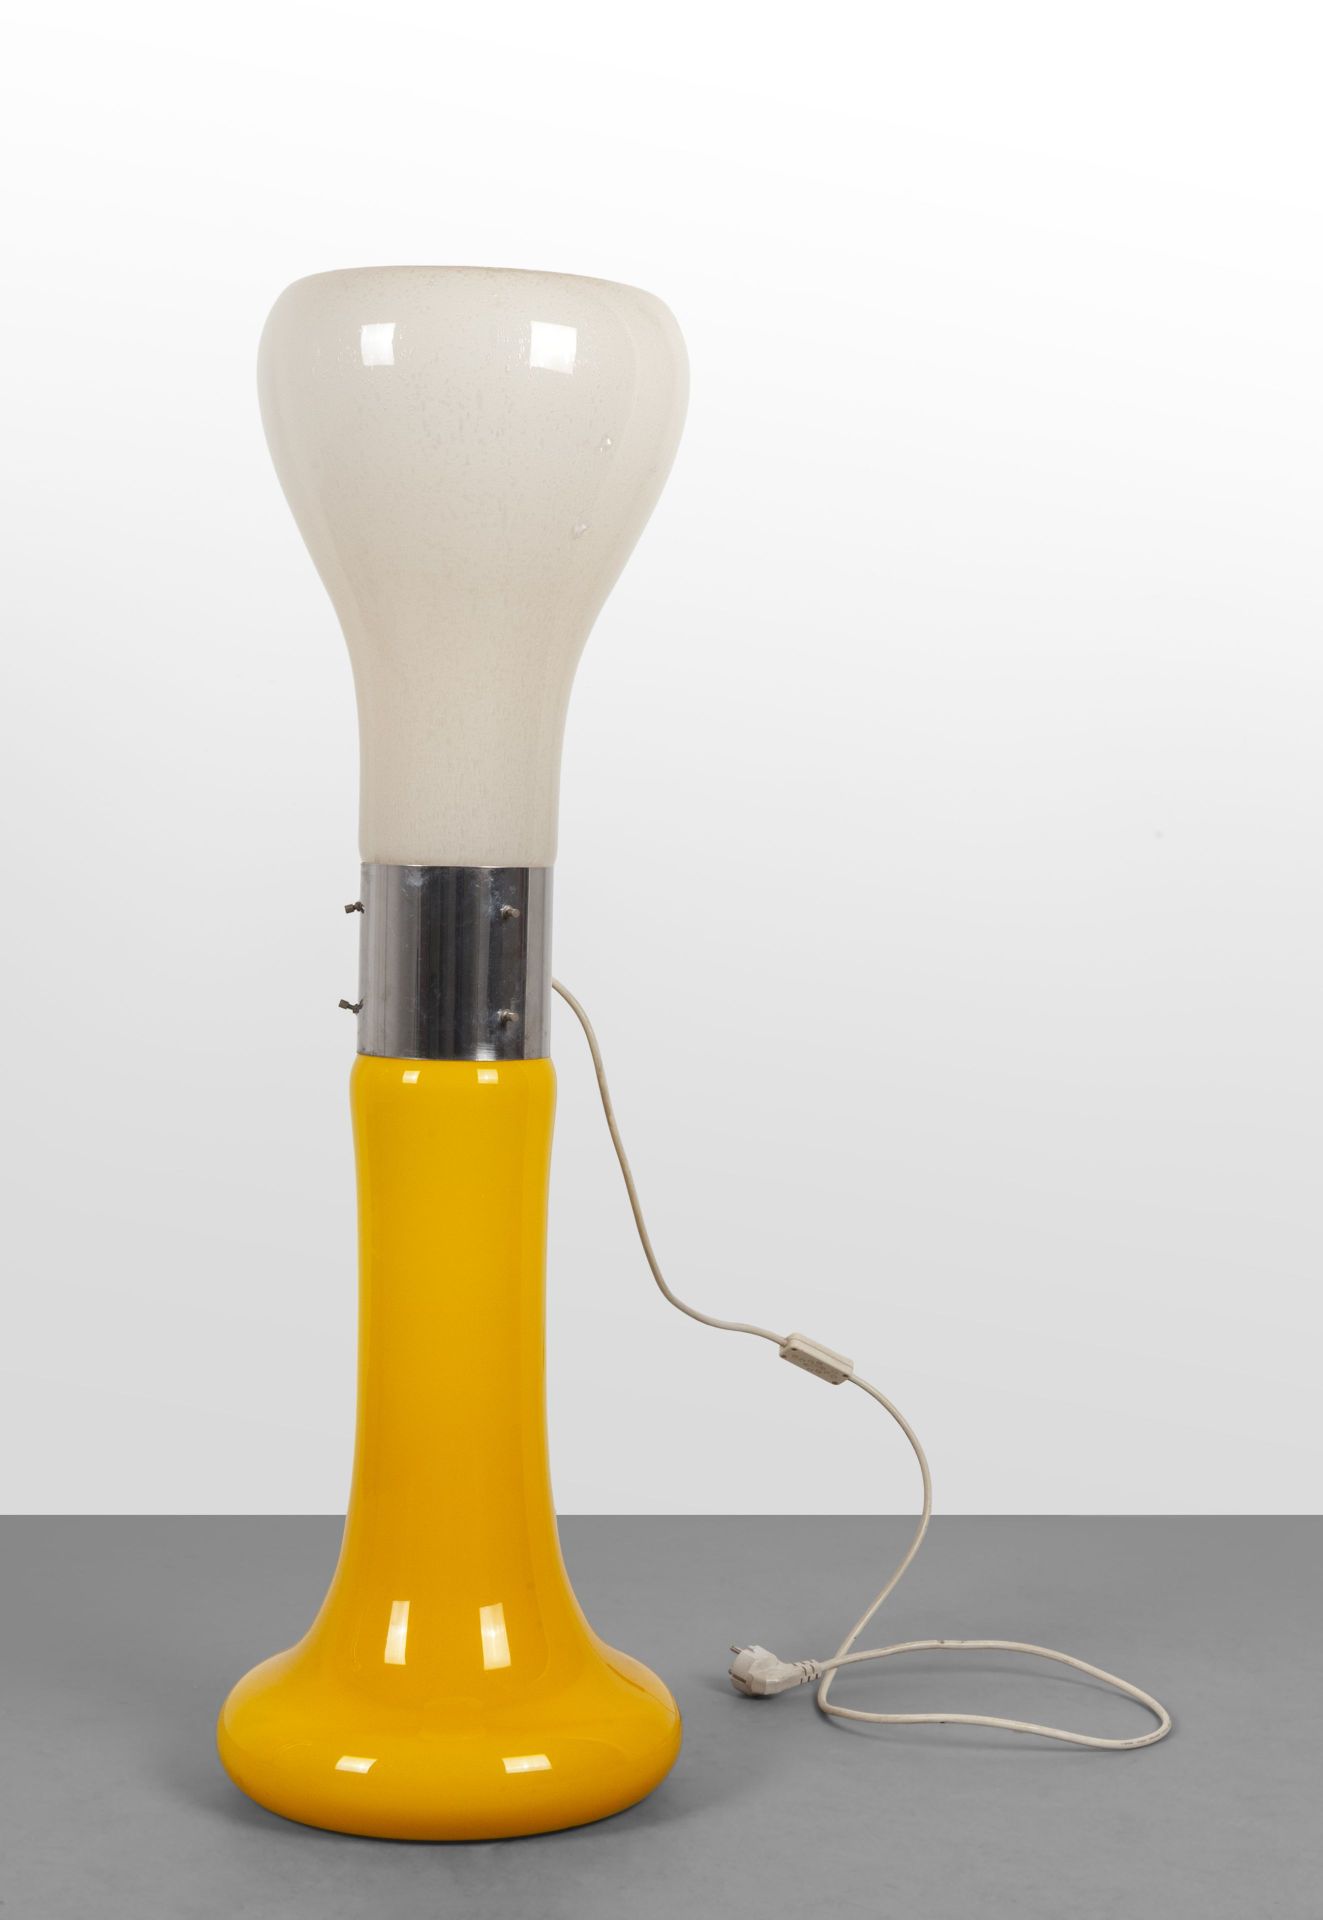 LAMPADA Lampadaire des années 1970. 
Acier chromé. 
Hauteur 105 cm.